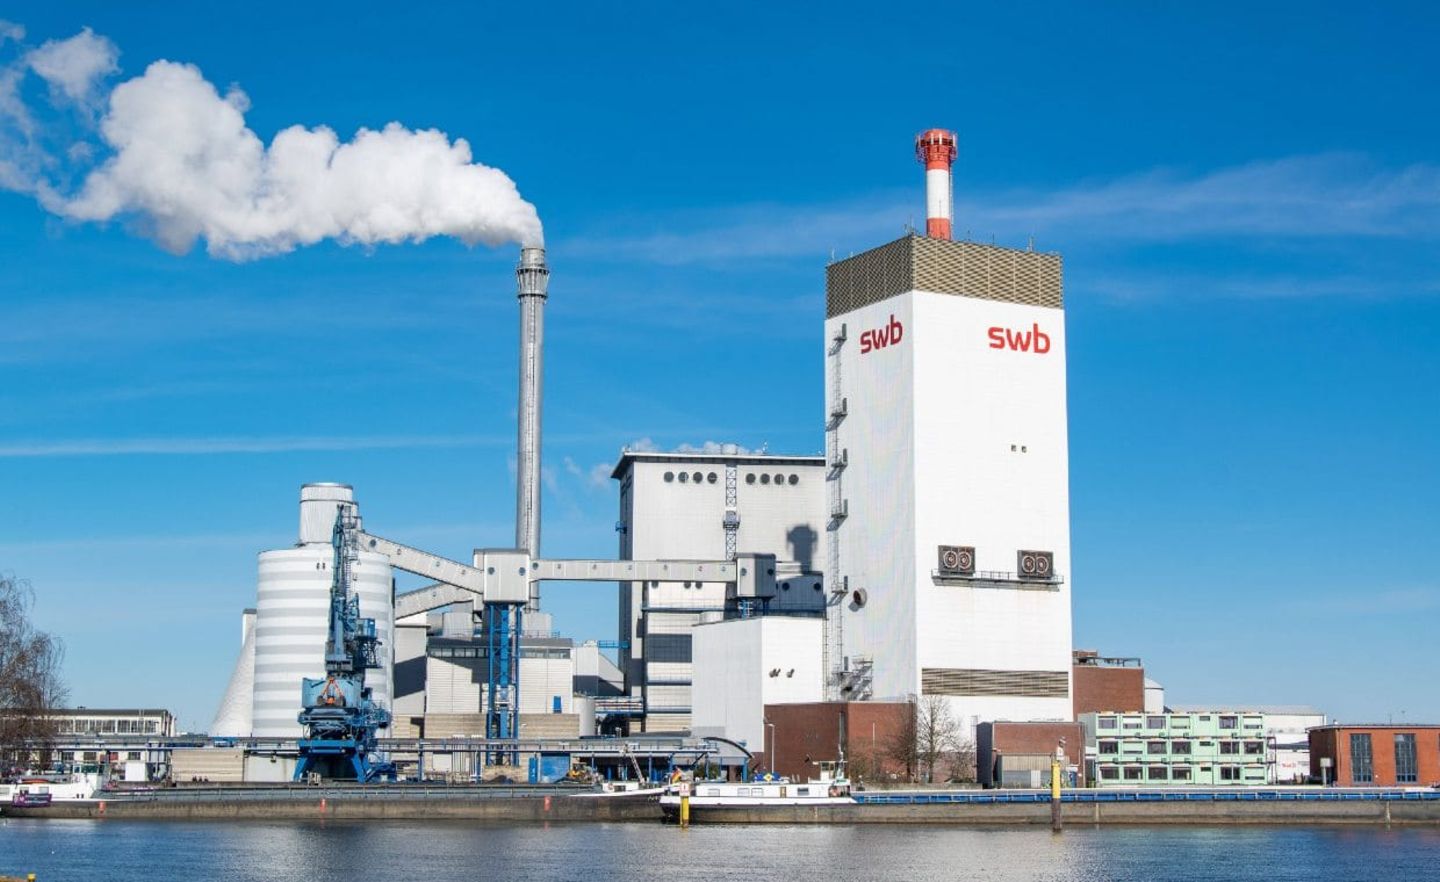 Die swb versorgt Bremen über mehrere Tochtergesellschaften mit Strom, Erdgas und Internet